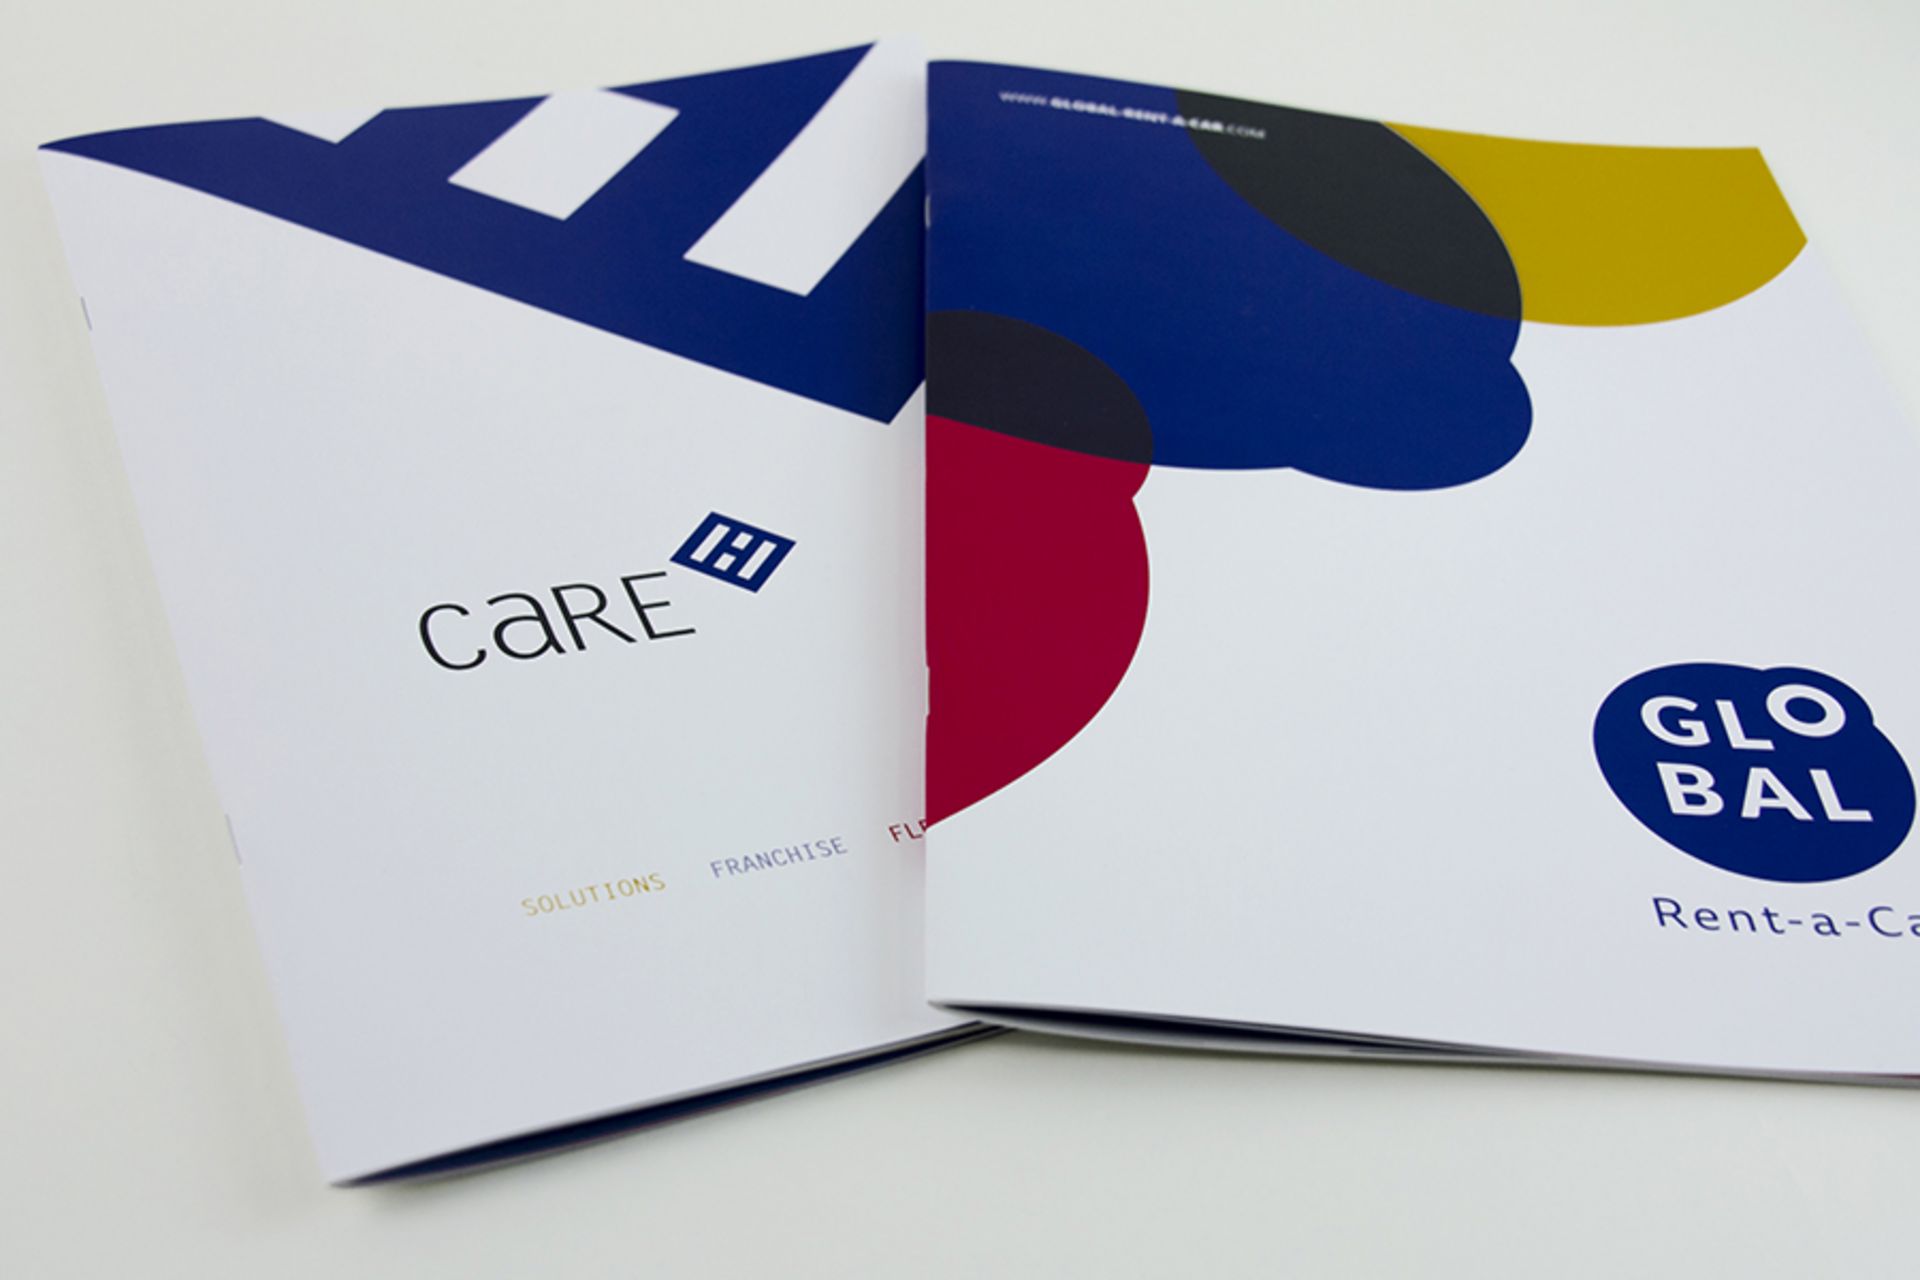 Markenentwicklung am Beispiel der Marke "GLOBAL Rent-a-Car" & "CaRE"